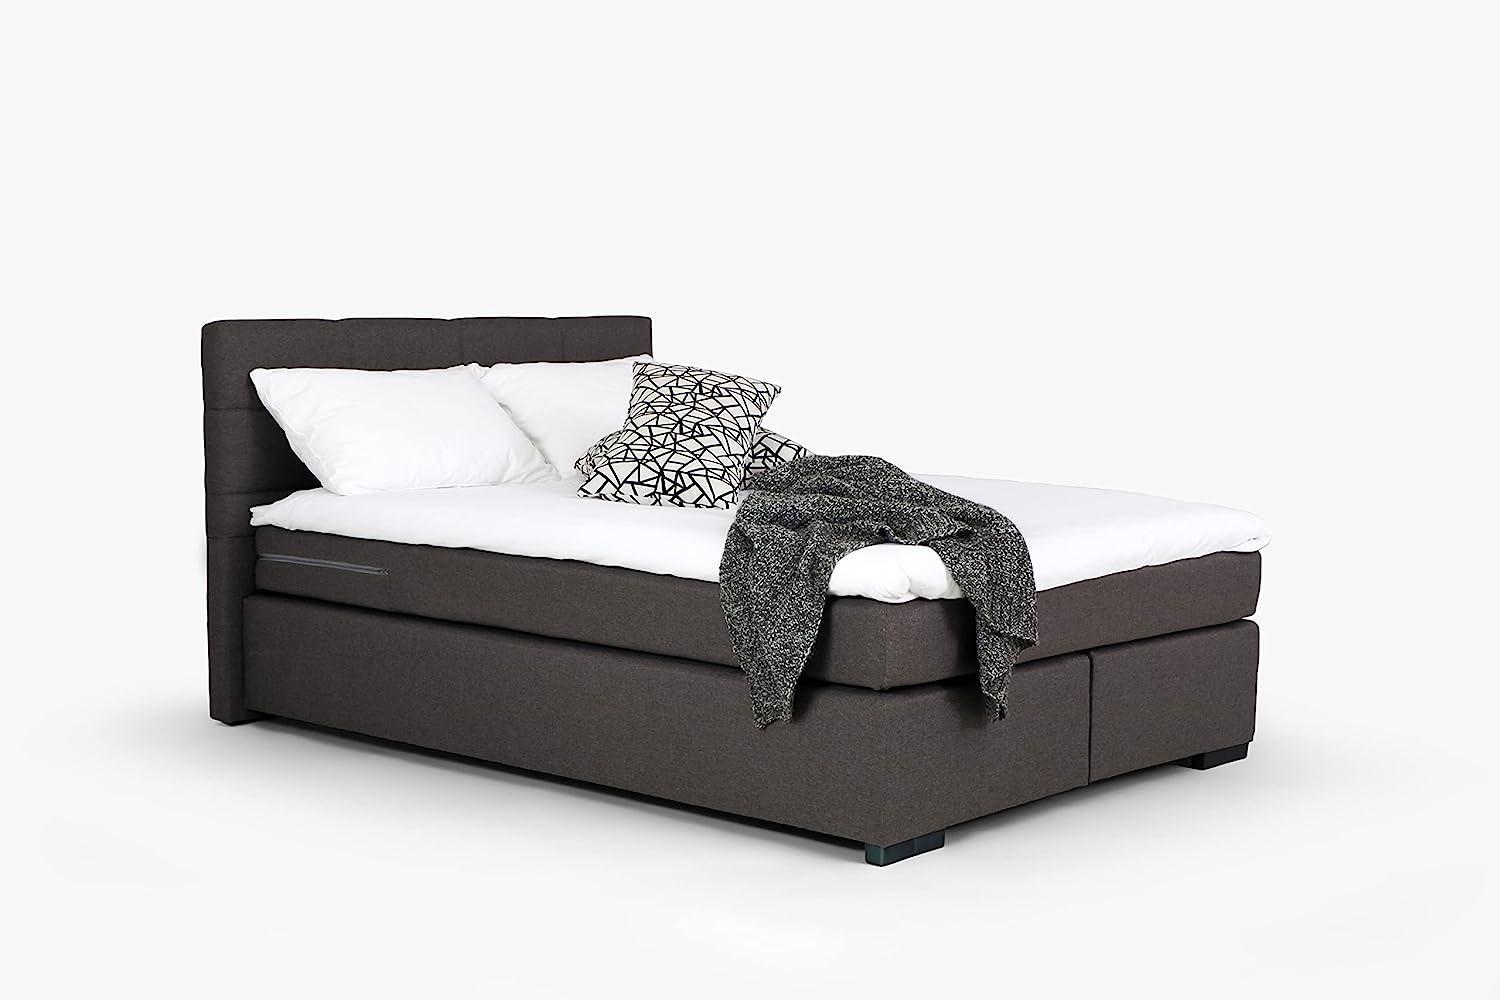 Mivano Beast Boxbett, Komfortables Bett mit Durchgehender Matratze (H3) und Topper, Flachgewebe Karoo Dunkelgrau, Liegefläche 180 x 200 cm Bild 1